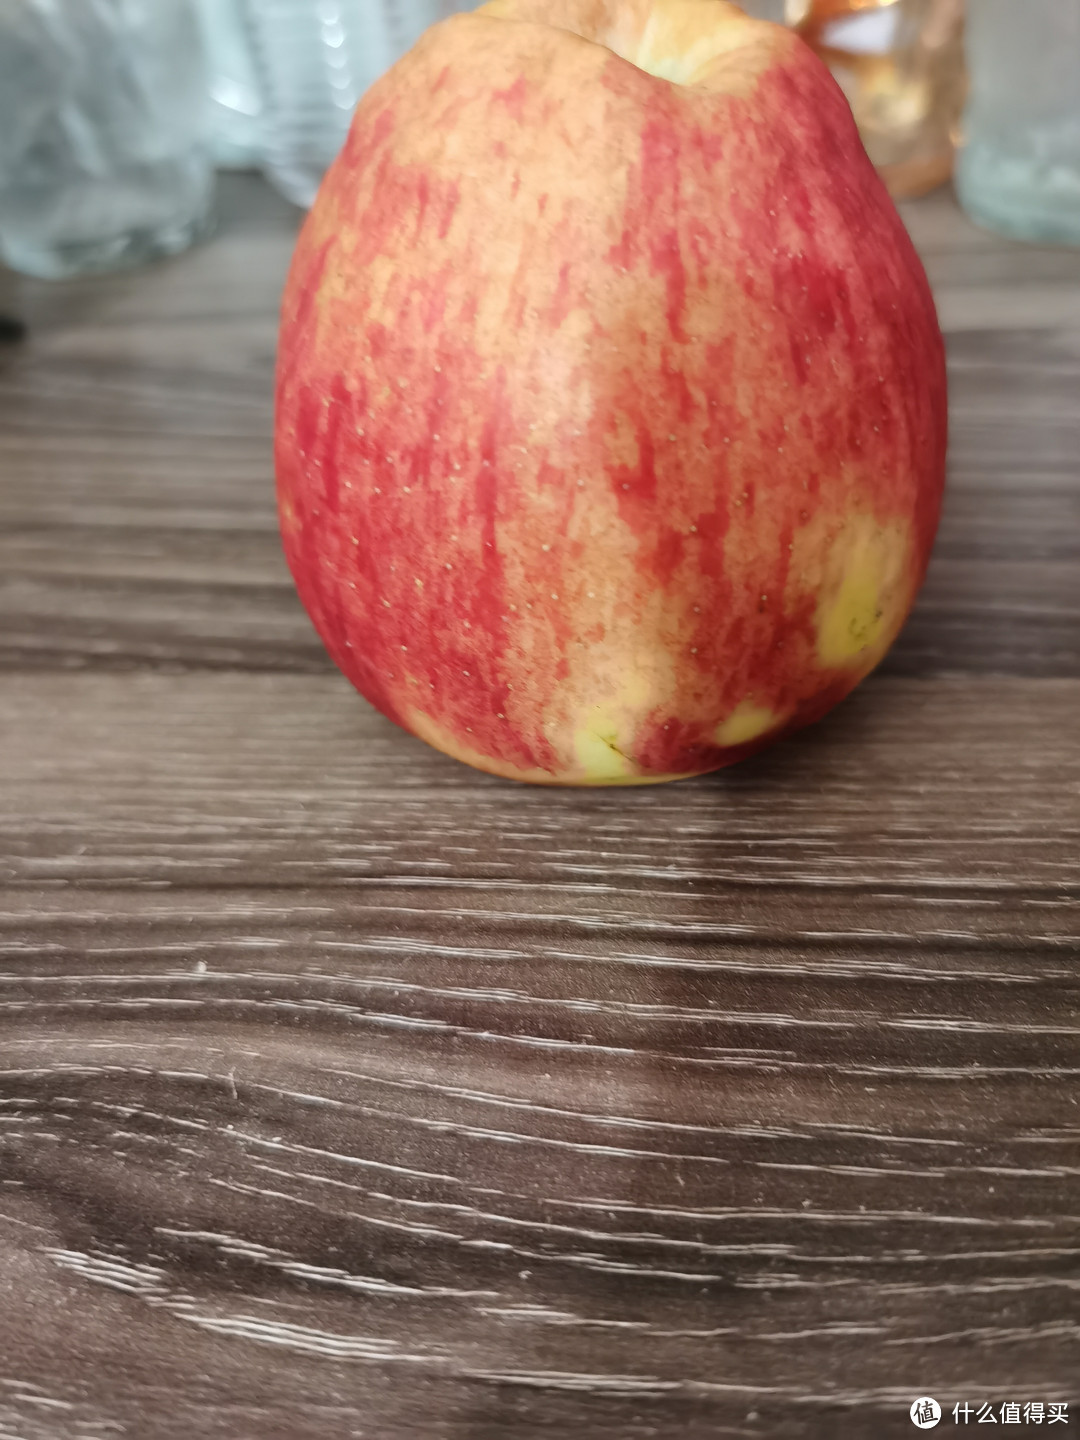 中秋团圆吃水果，果中贵族红露苹果